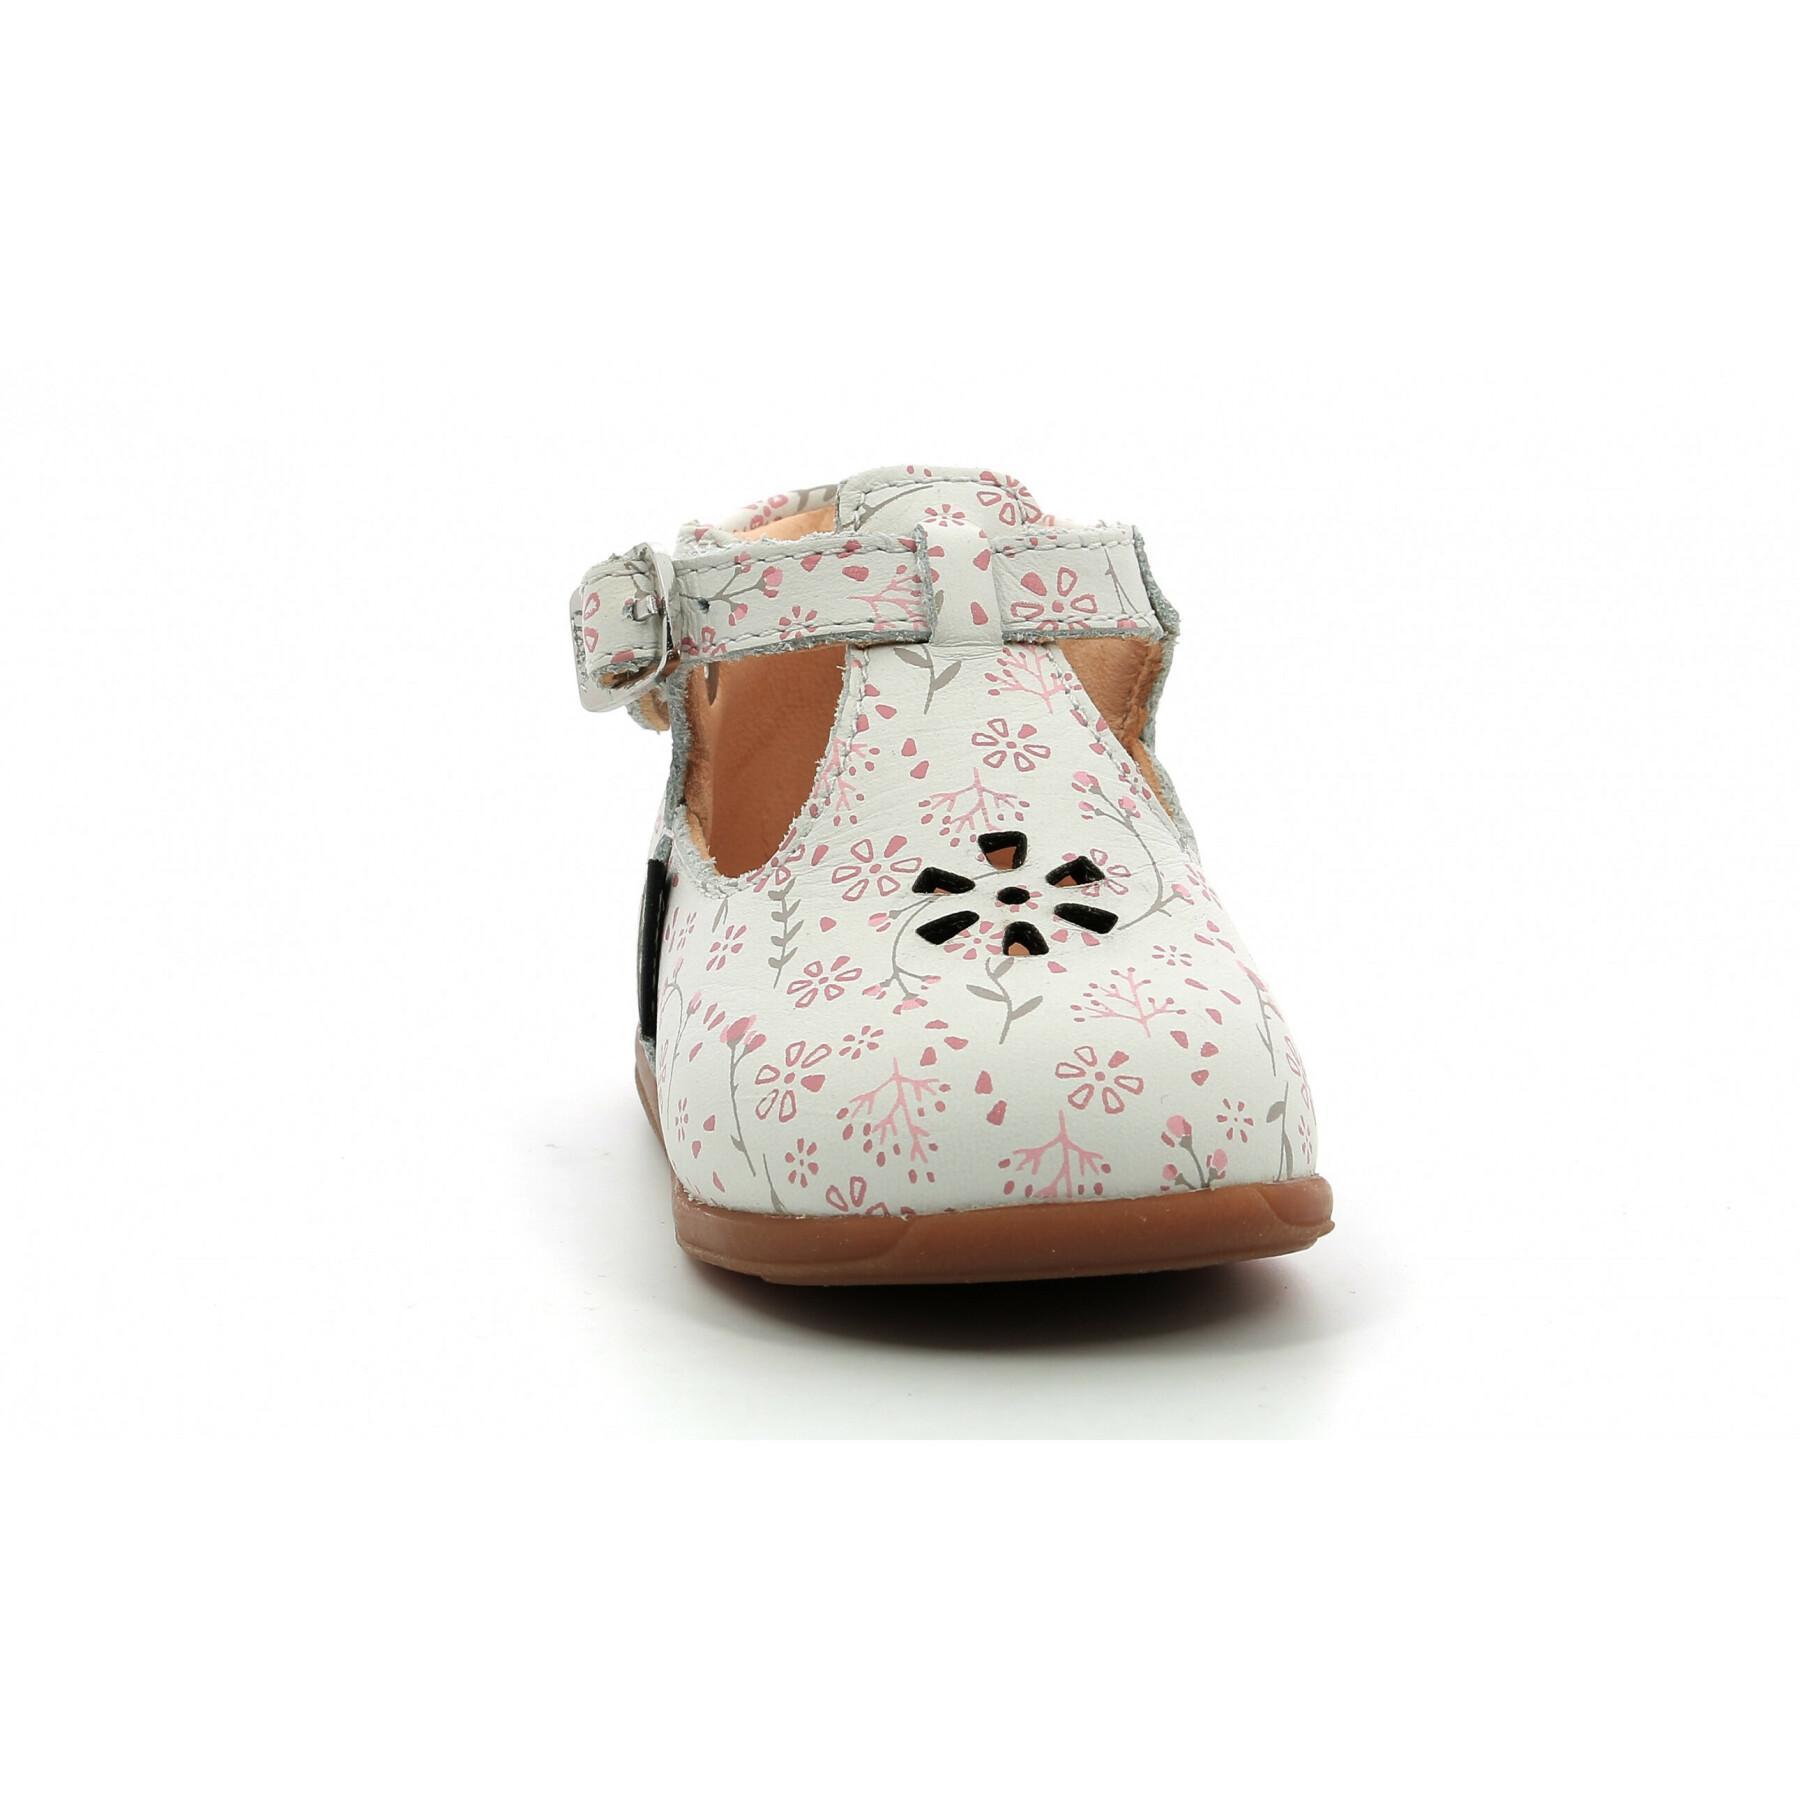 sandalen voor babymeisjes Aster Odjumbo